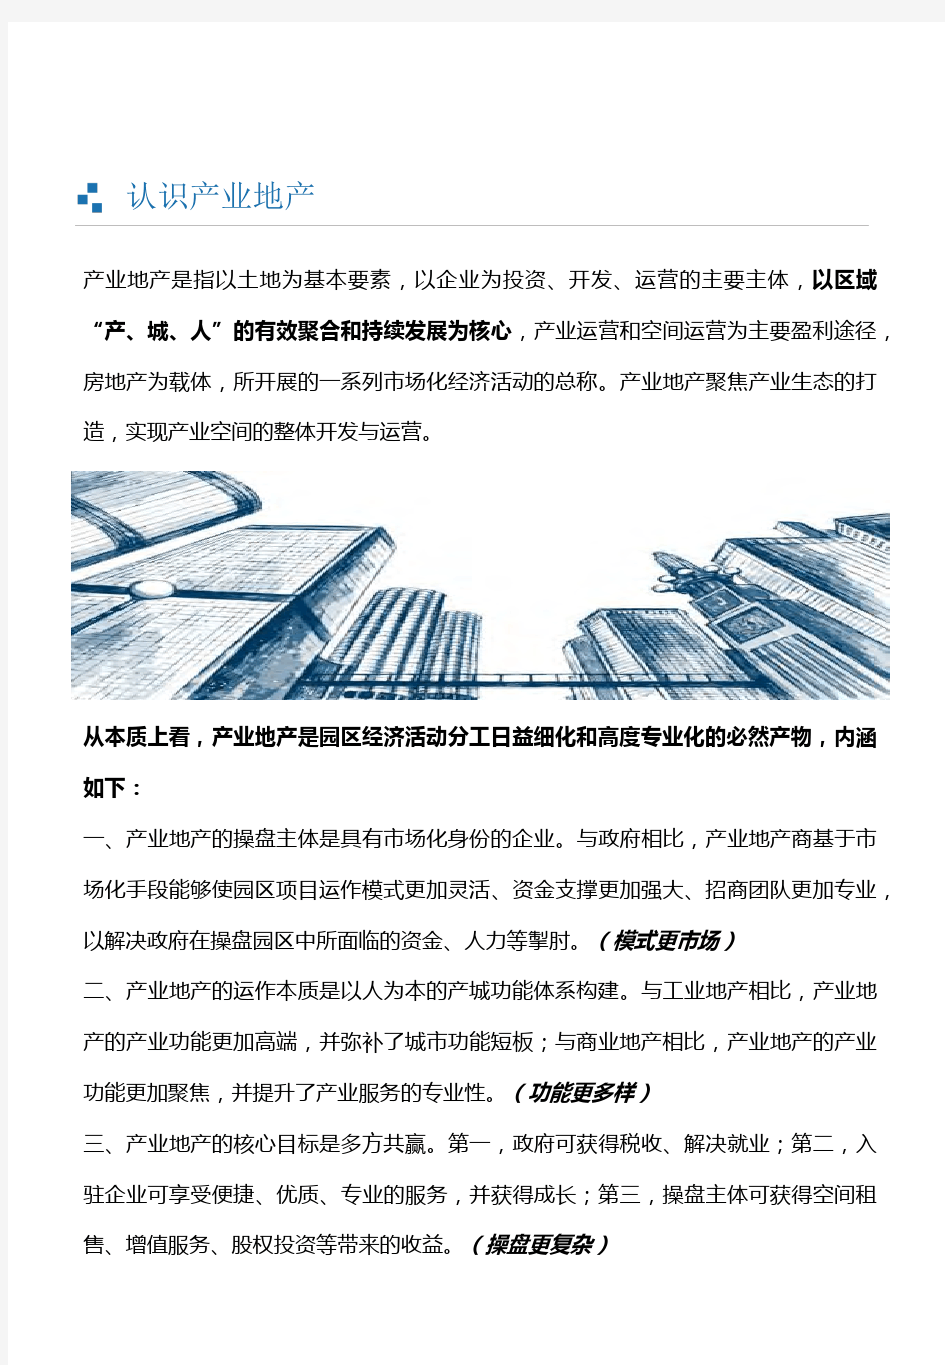 2019年中国产业地产投资运营主体及业务模式